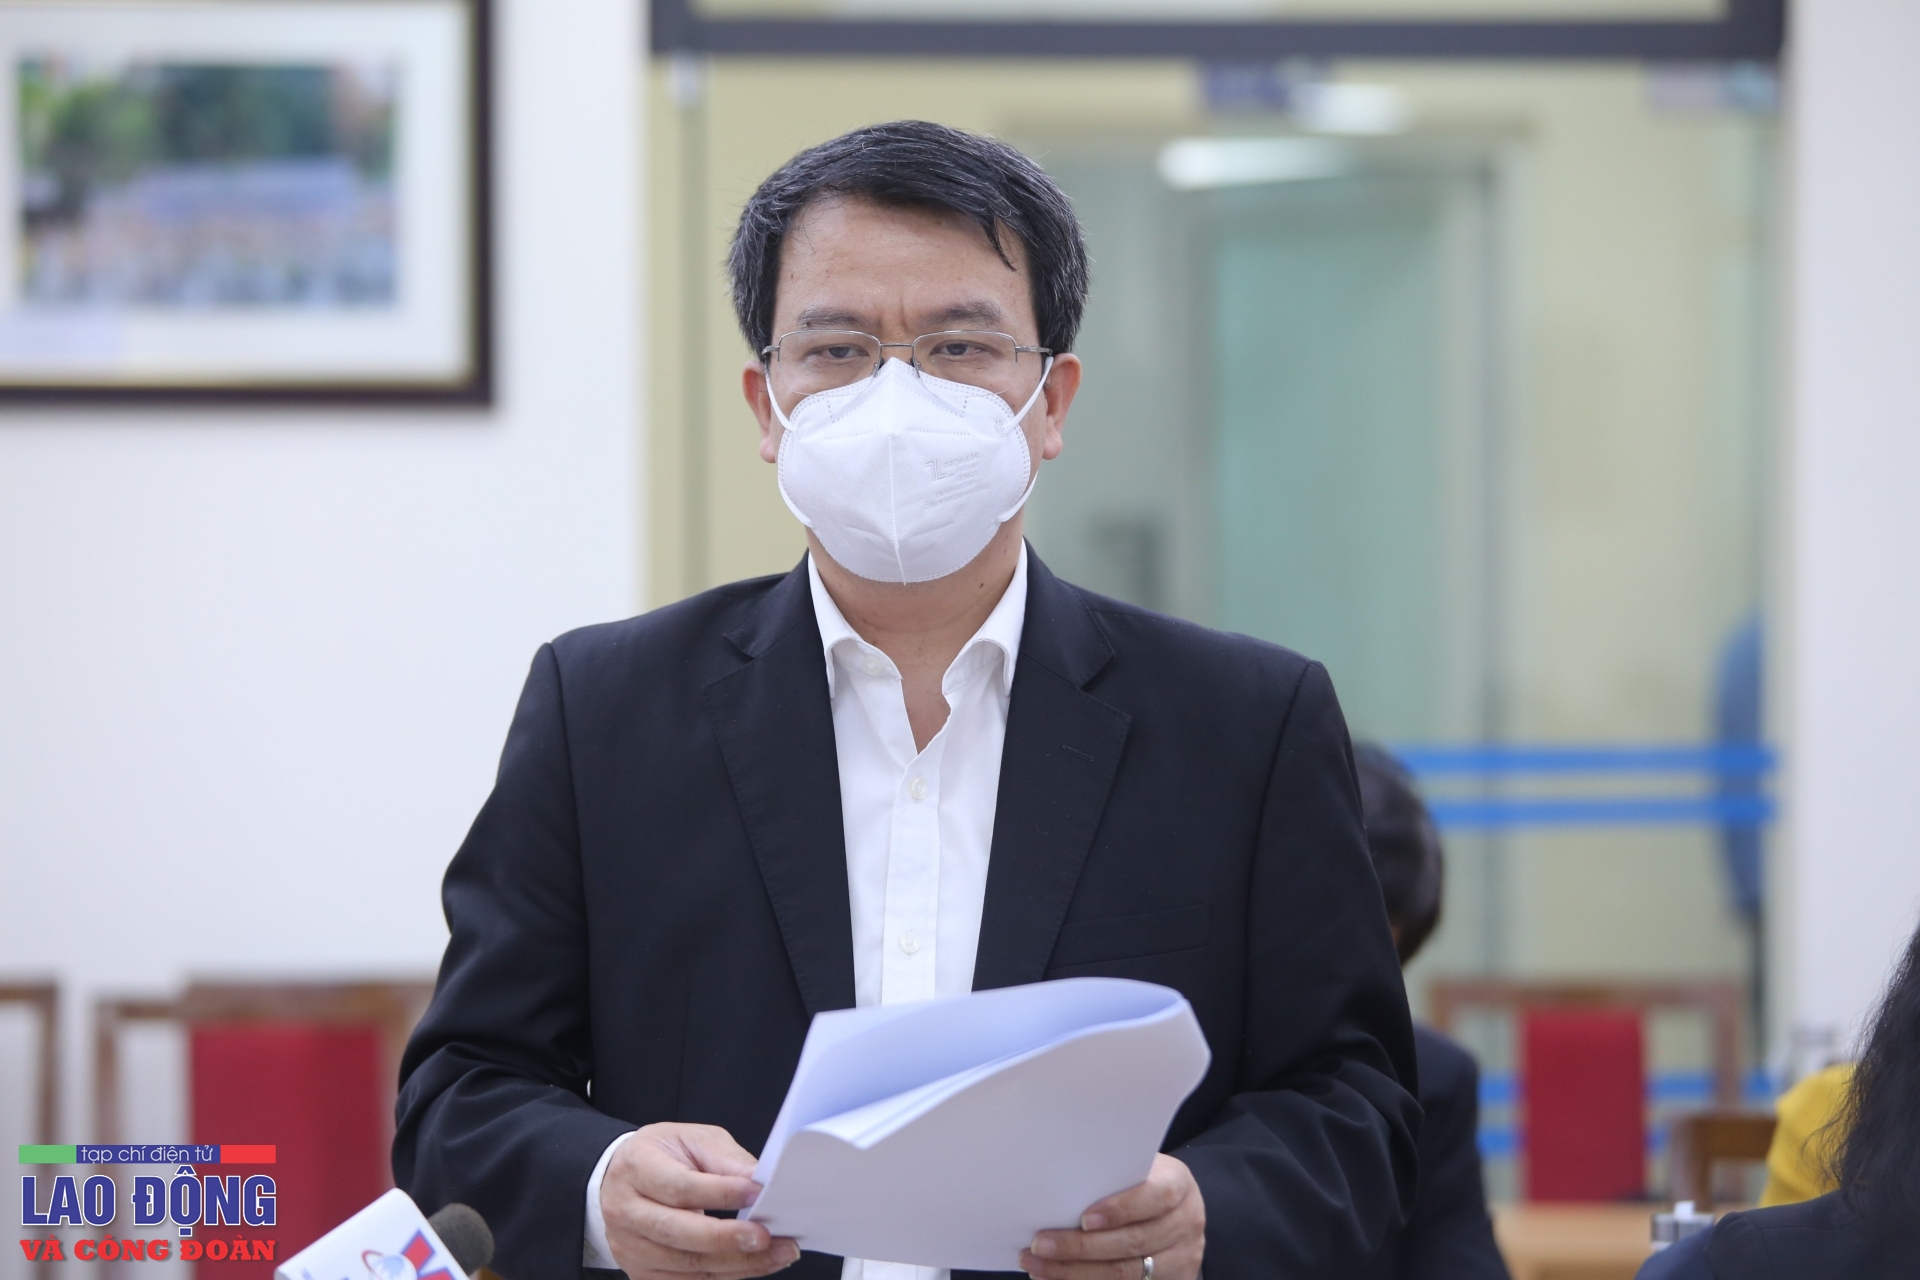 Đang kiện toàn nhân sự lãnh đạo tại Bệnh viện Tuệ Tĩnh